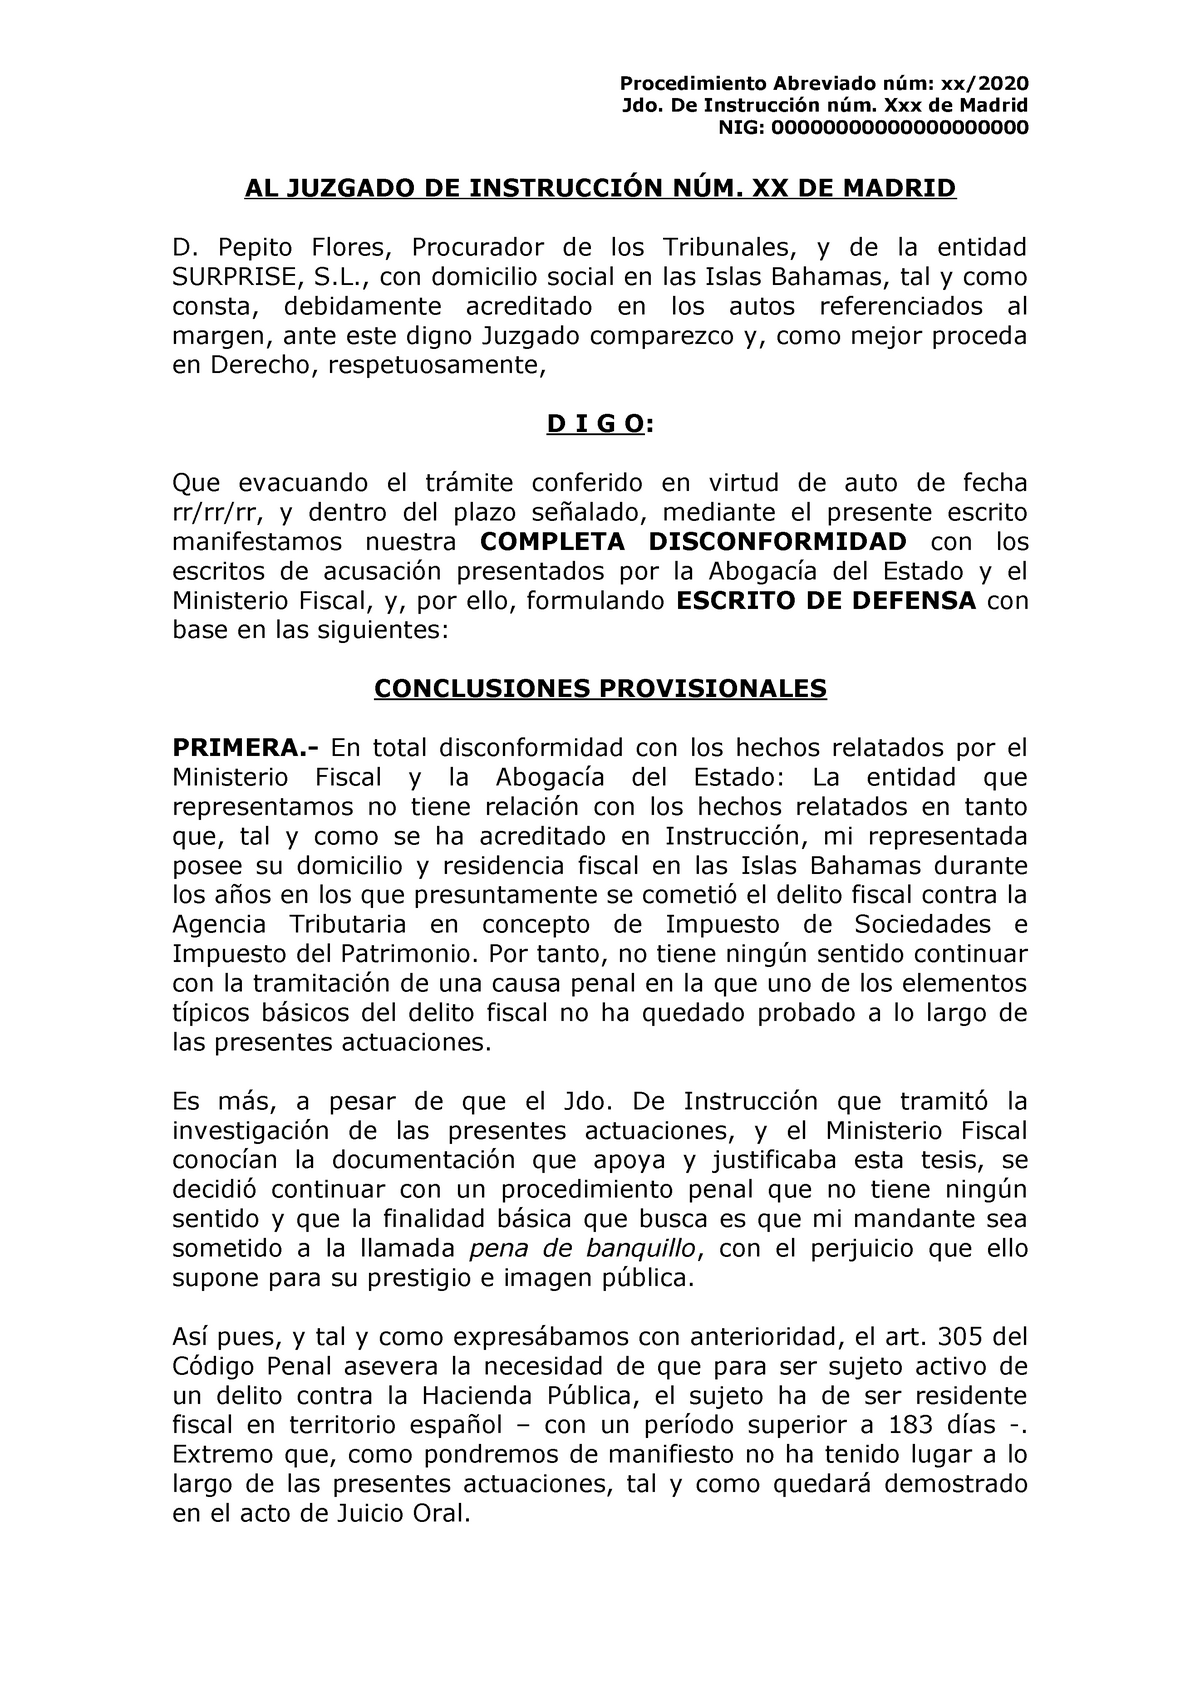 Modelo Escrito de defensa provisional - Procedimiento Abreviado núm: xx/  Jdo. De Instrucción núm. - Studocu